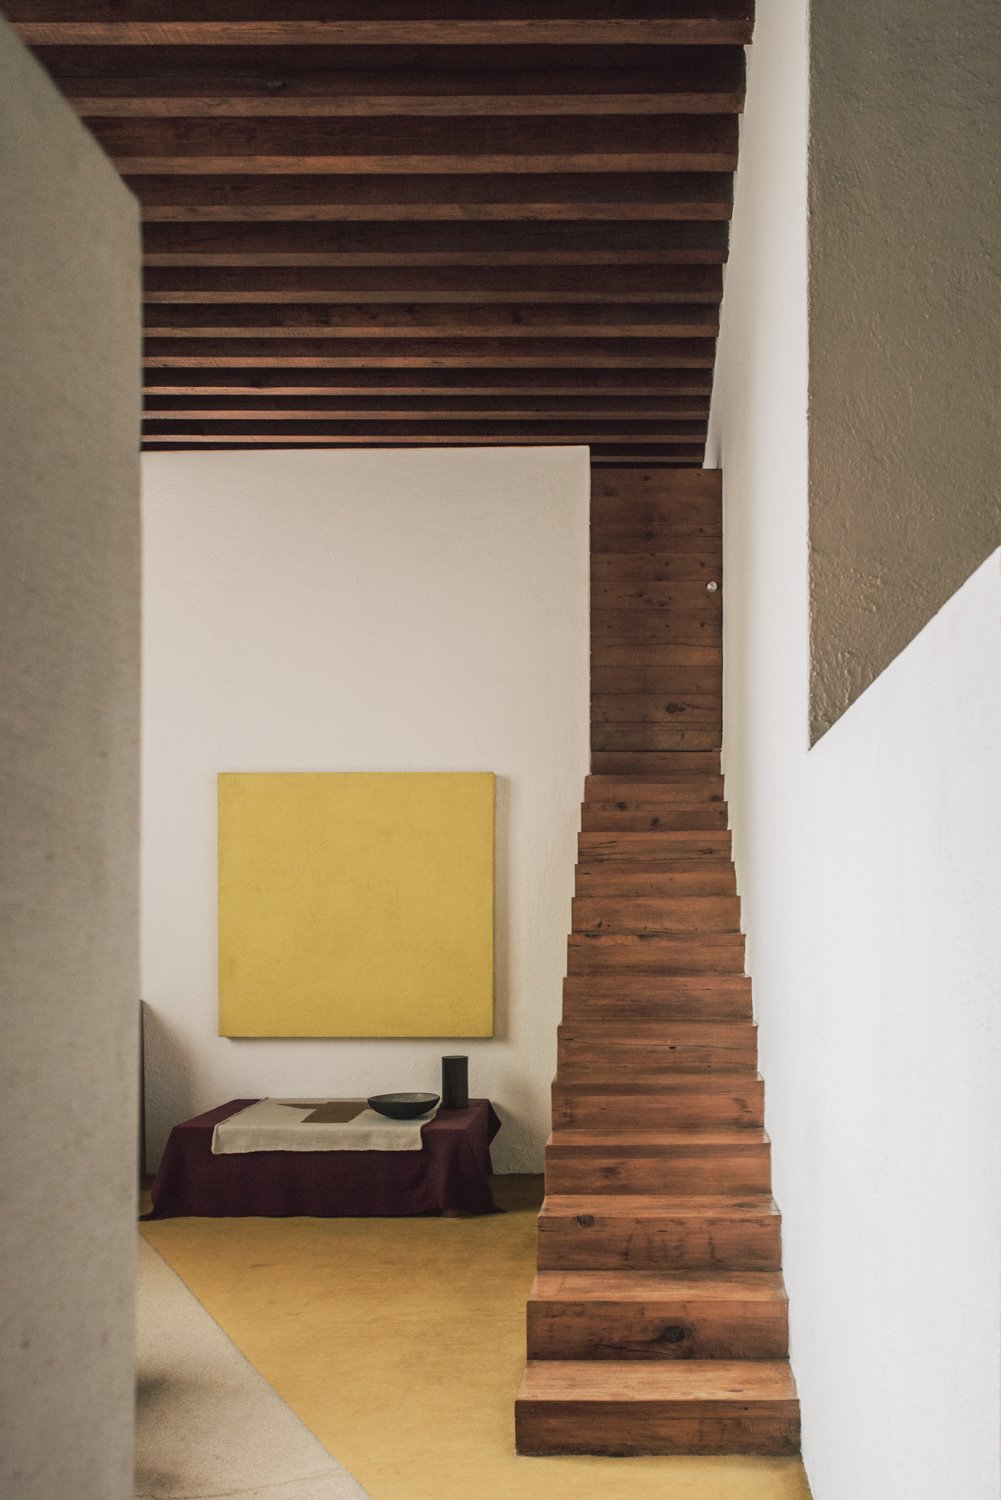 Escalera en una casa con vigas de madera del arquitecto mexicano Luis Barragan